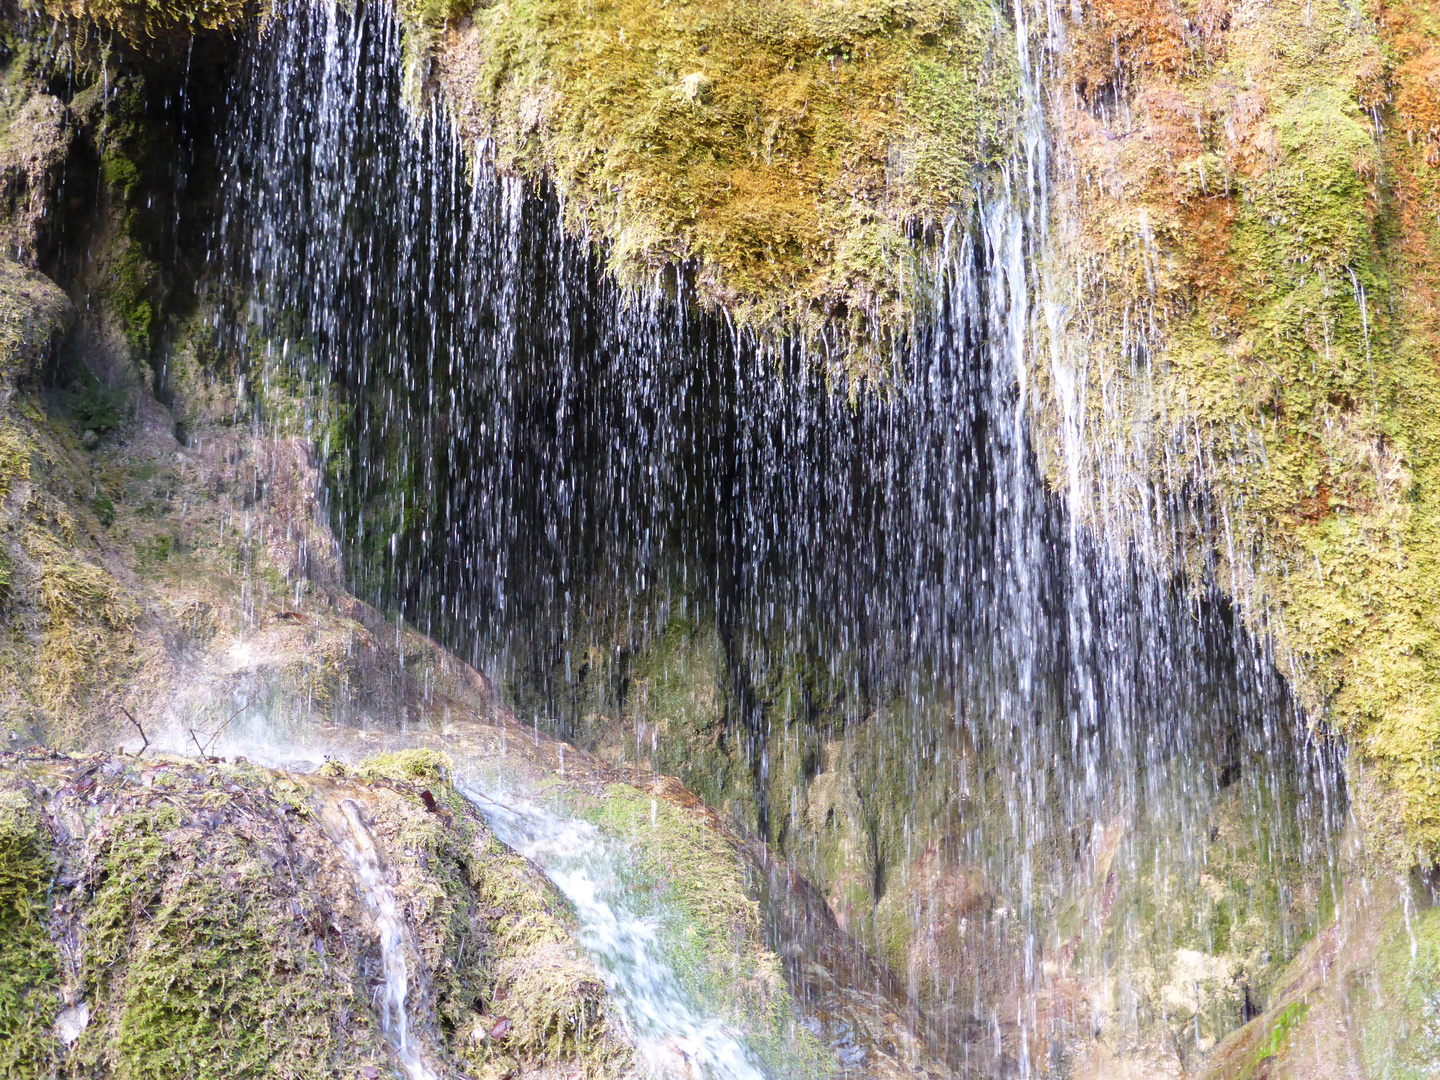 Nöhner Wasserfalle weint